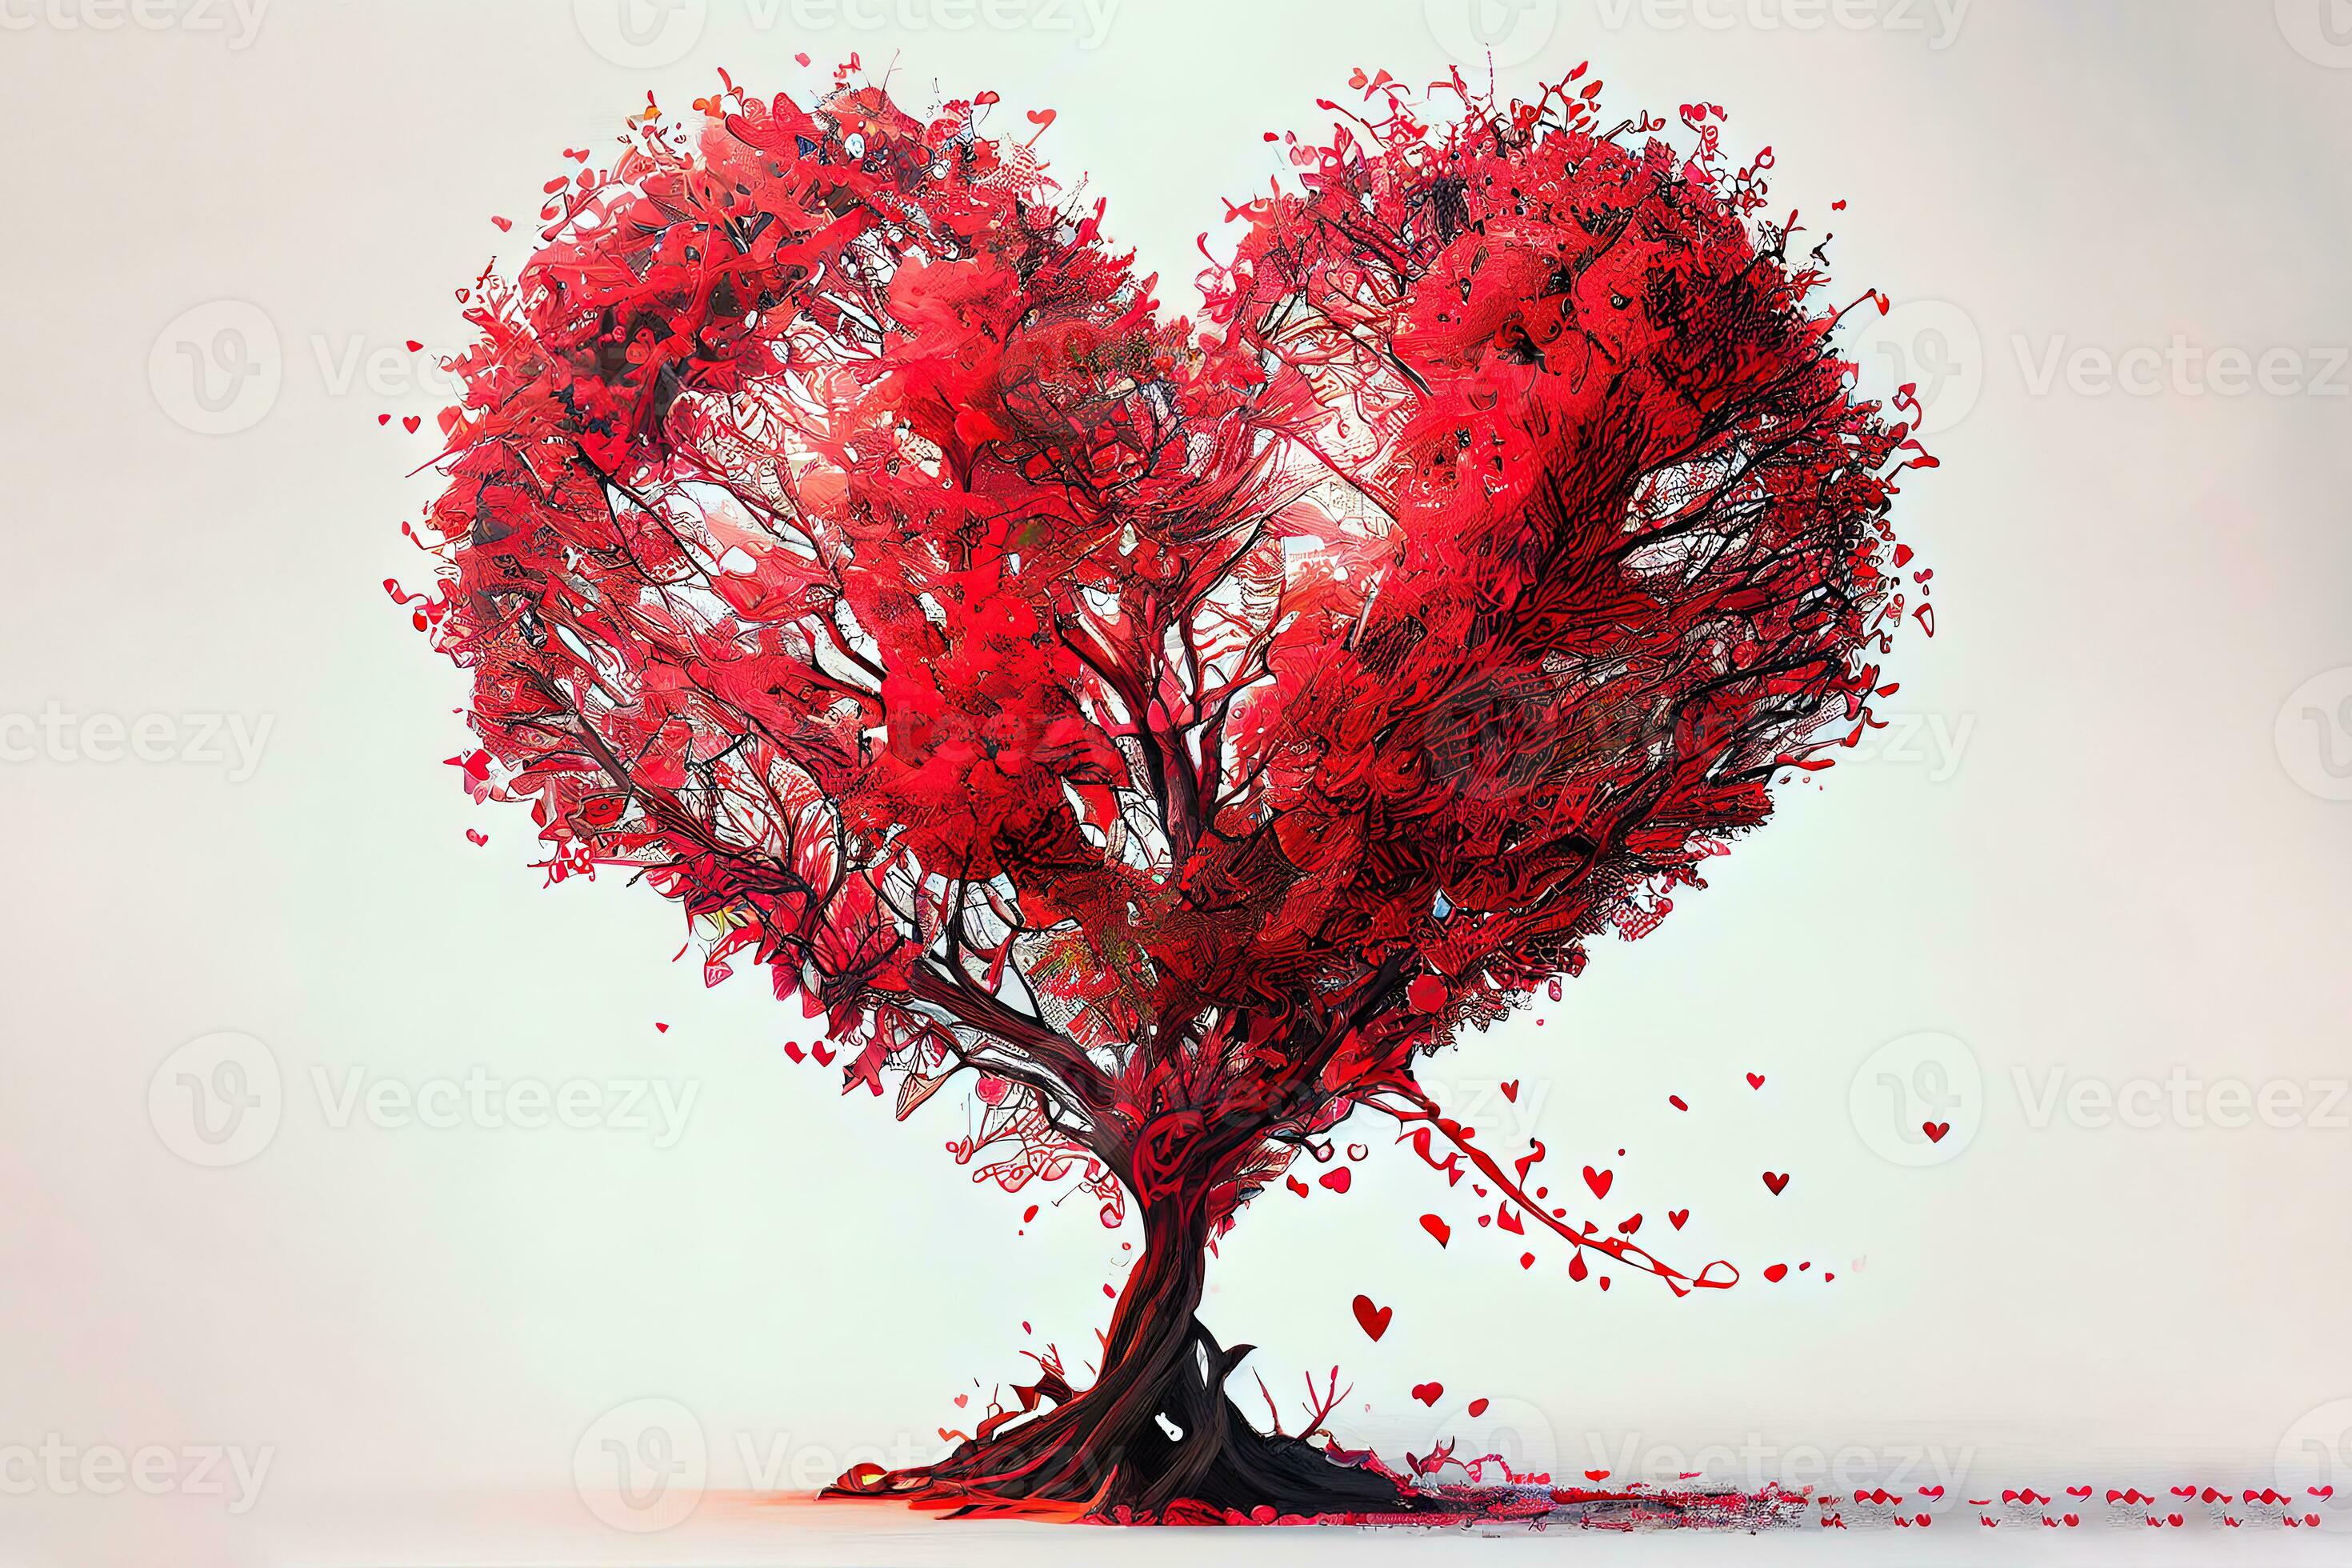 https://static.vecteezy.com/ti/photos-gratuite/p2/23236314-magnifique-rouge-l-amour-arbre-coeur-en-forme-de-photo.jpeg